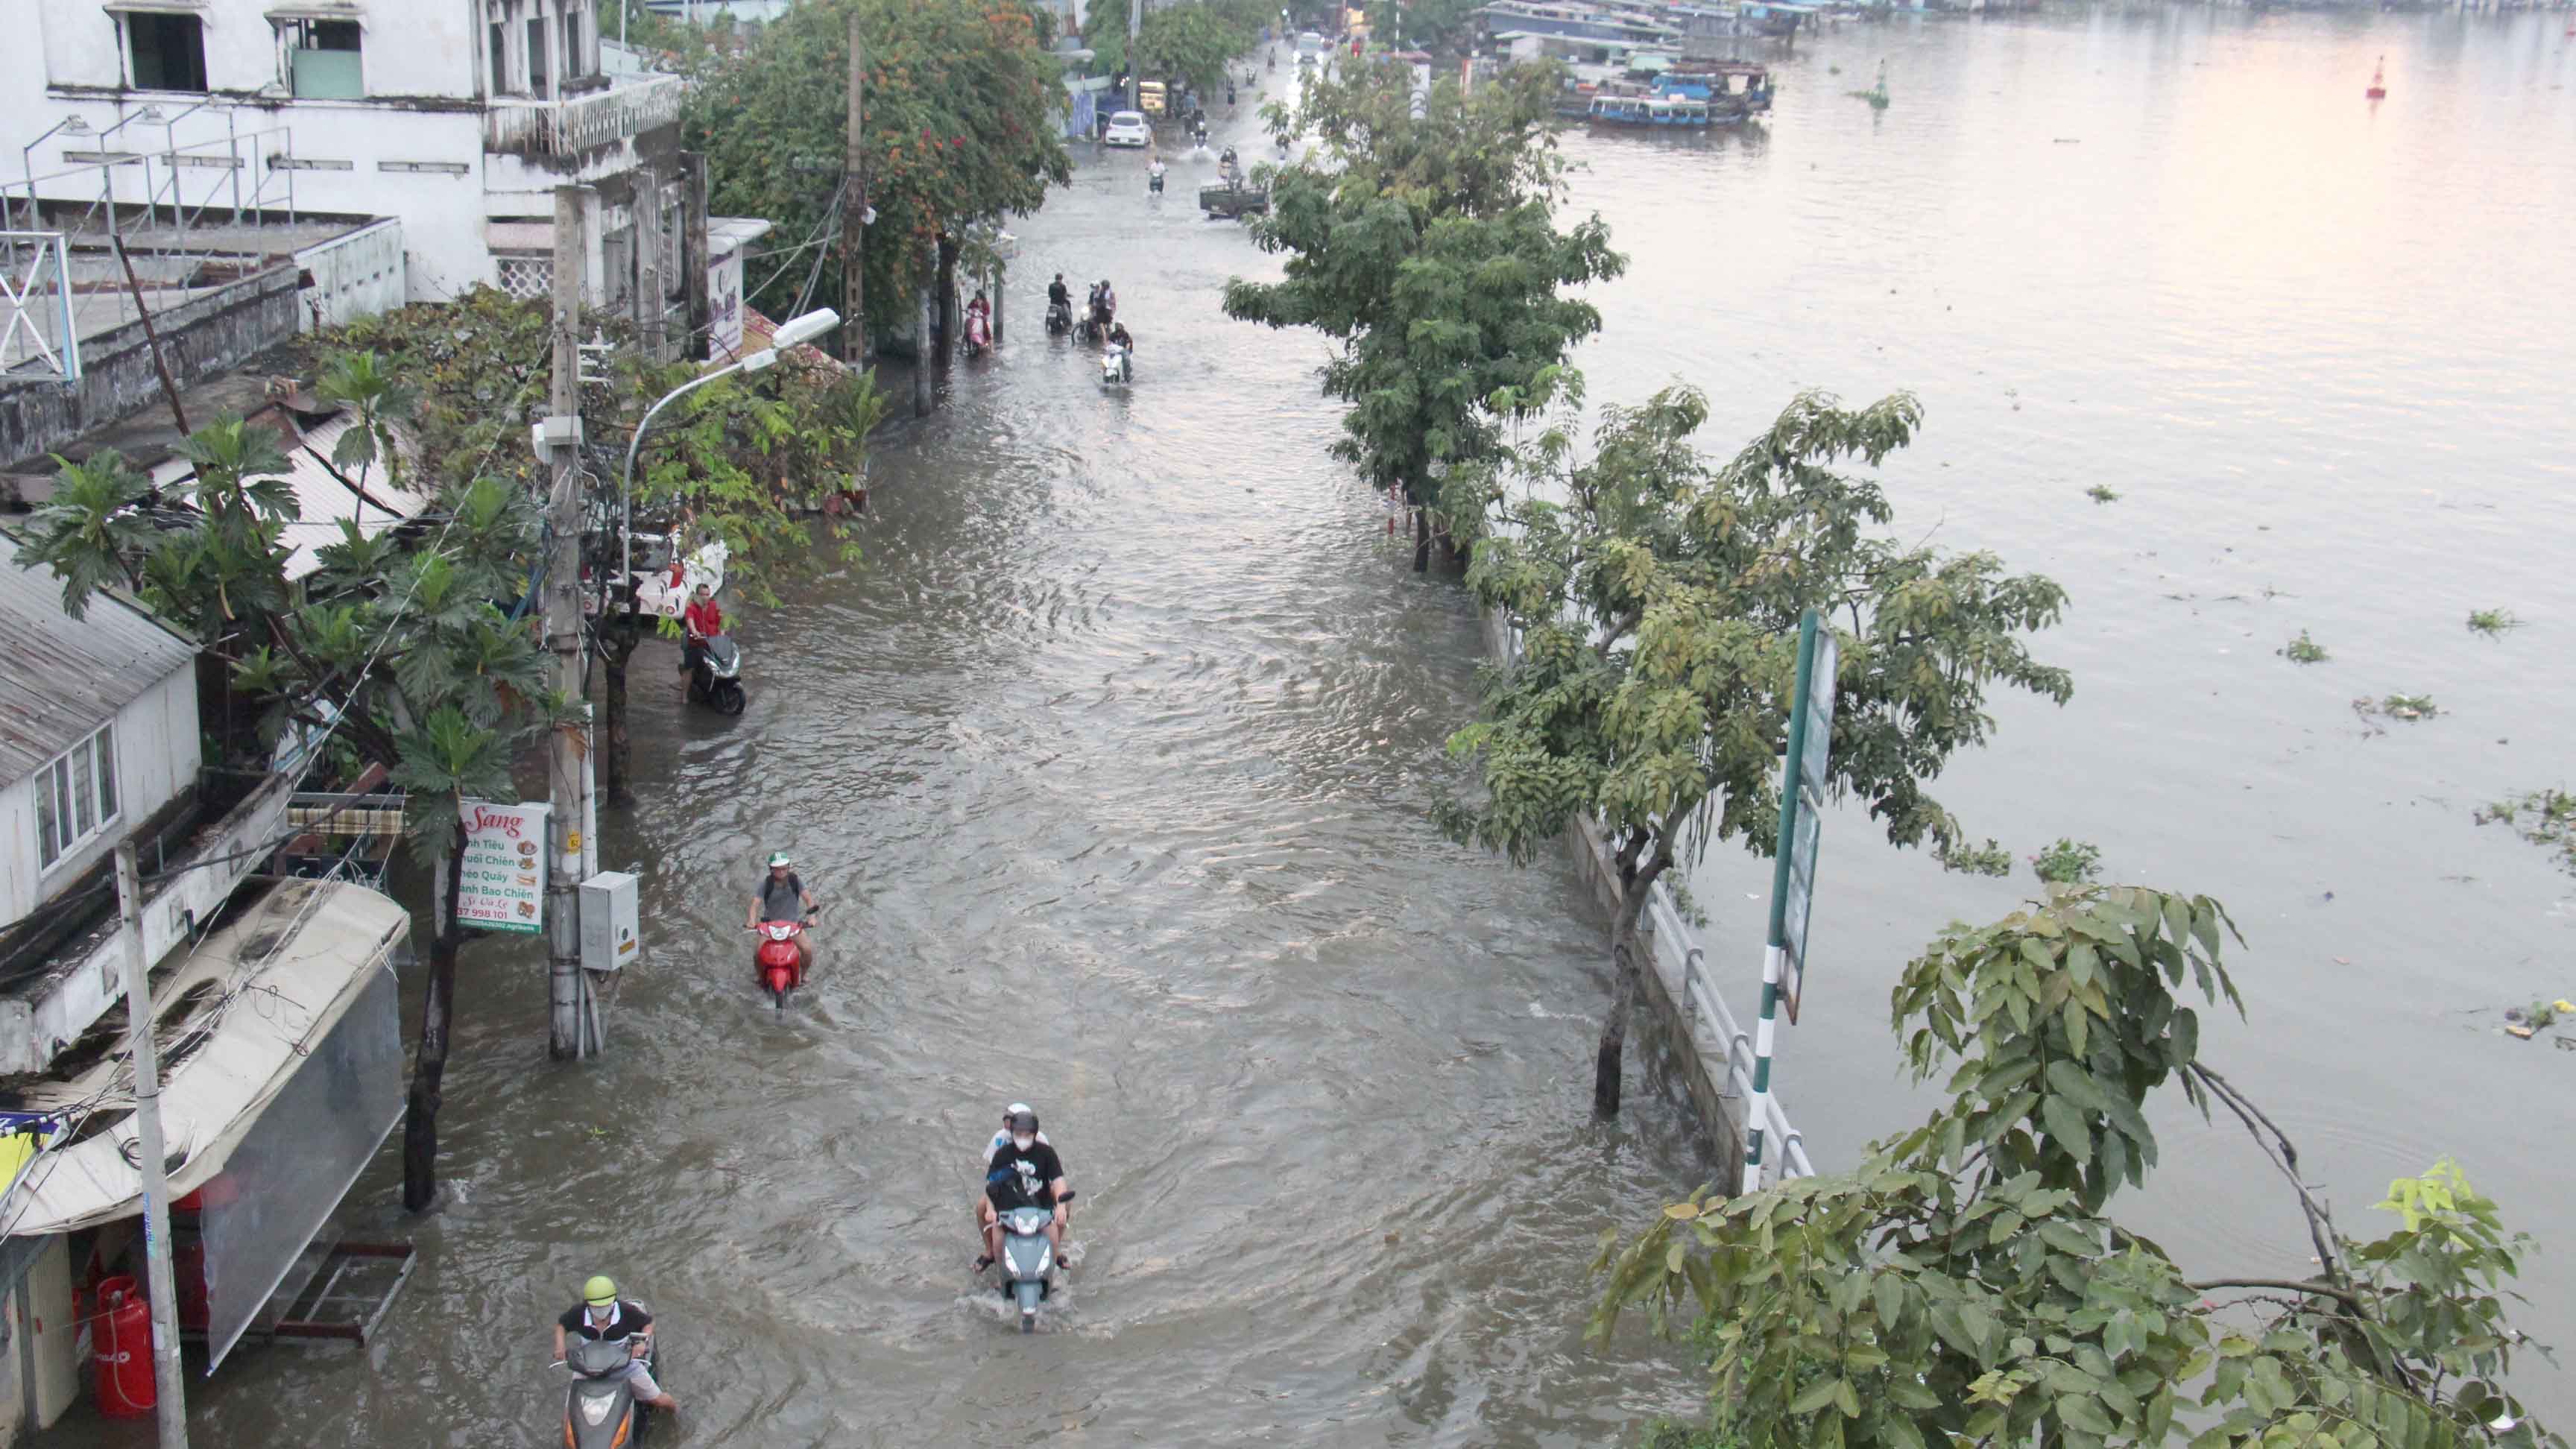 Từ khoảng 16 giờ 30 phút, mực nước các sông, kênh, rạch ở Thành phố Hồ Chí Minh lên nhanh theo đỉnh triều cường cuối tháng 10 (giữa tháng 9 âm lịch).